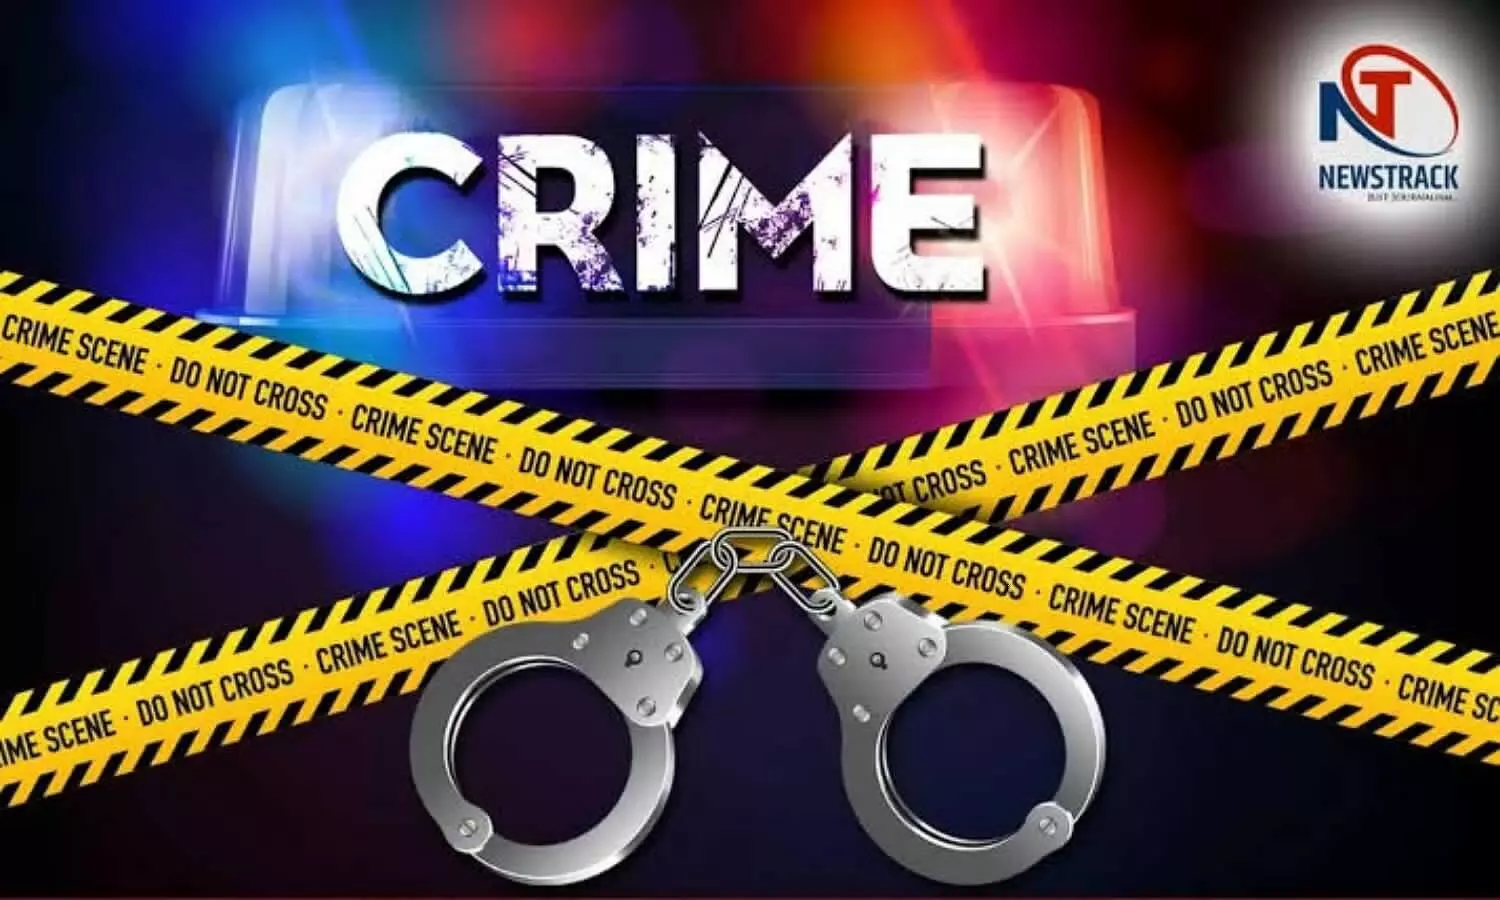 Mirzapur crime news